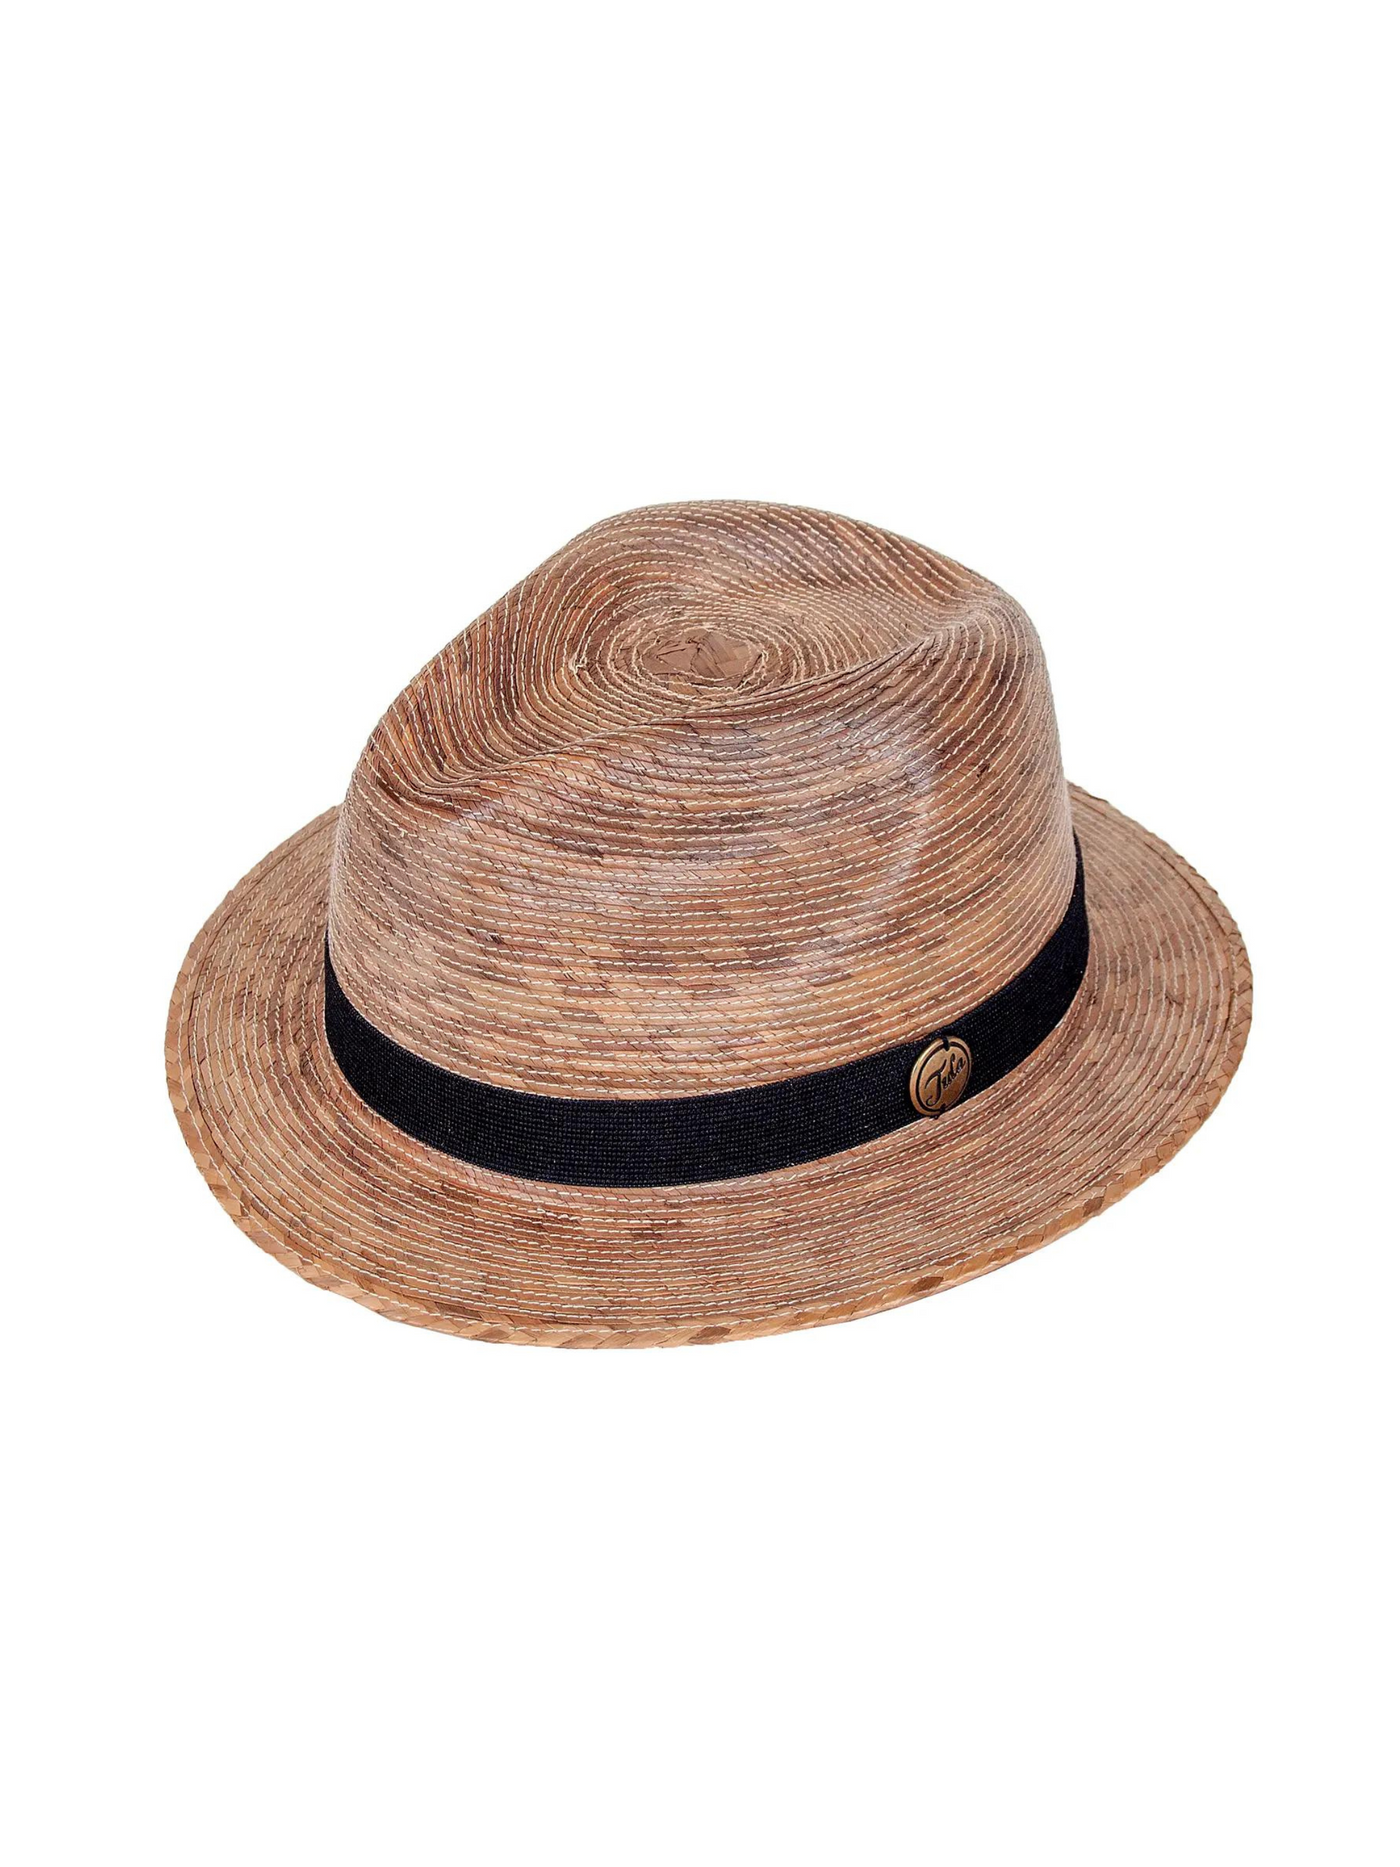 Memphis Handwoven Palm Hat